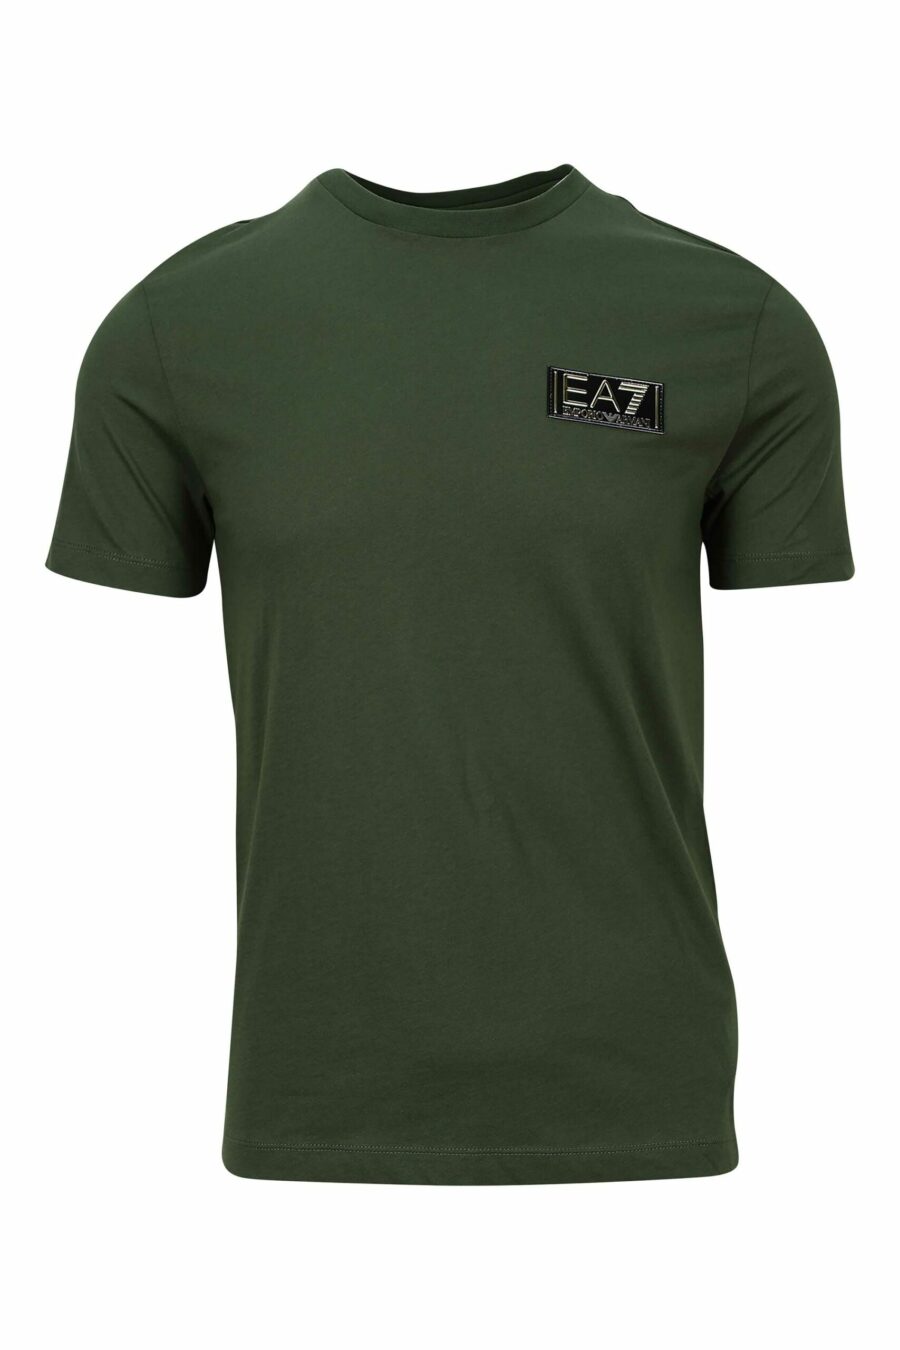 Camiseta verde oscuro con minilogo etiqueta "lux identity" dorado - 8057767634544 scaled